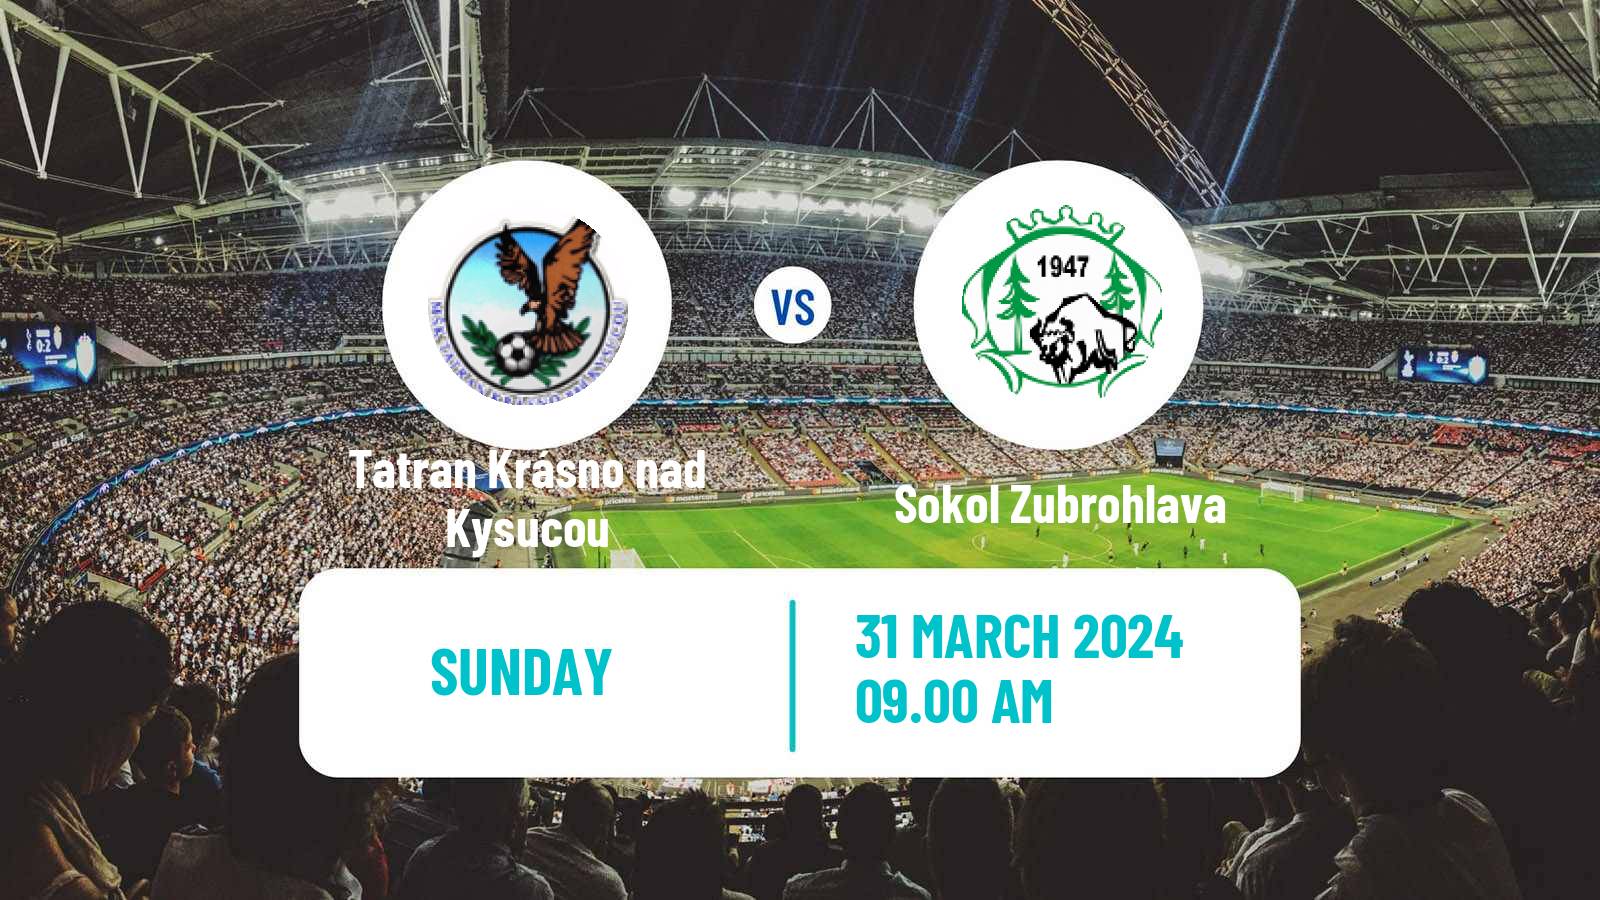 Soccer Slovak 4 Liga Central Tatran Krásno nad Kysucou - Sokol Zubrohlava